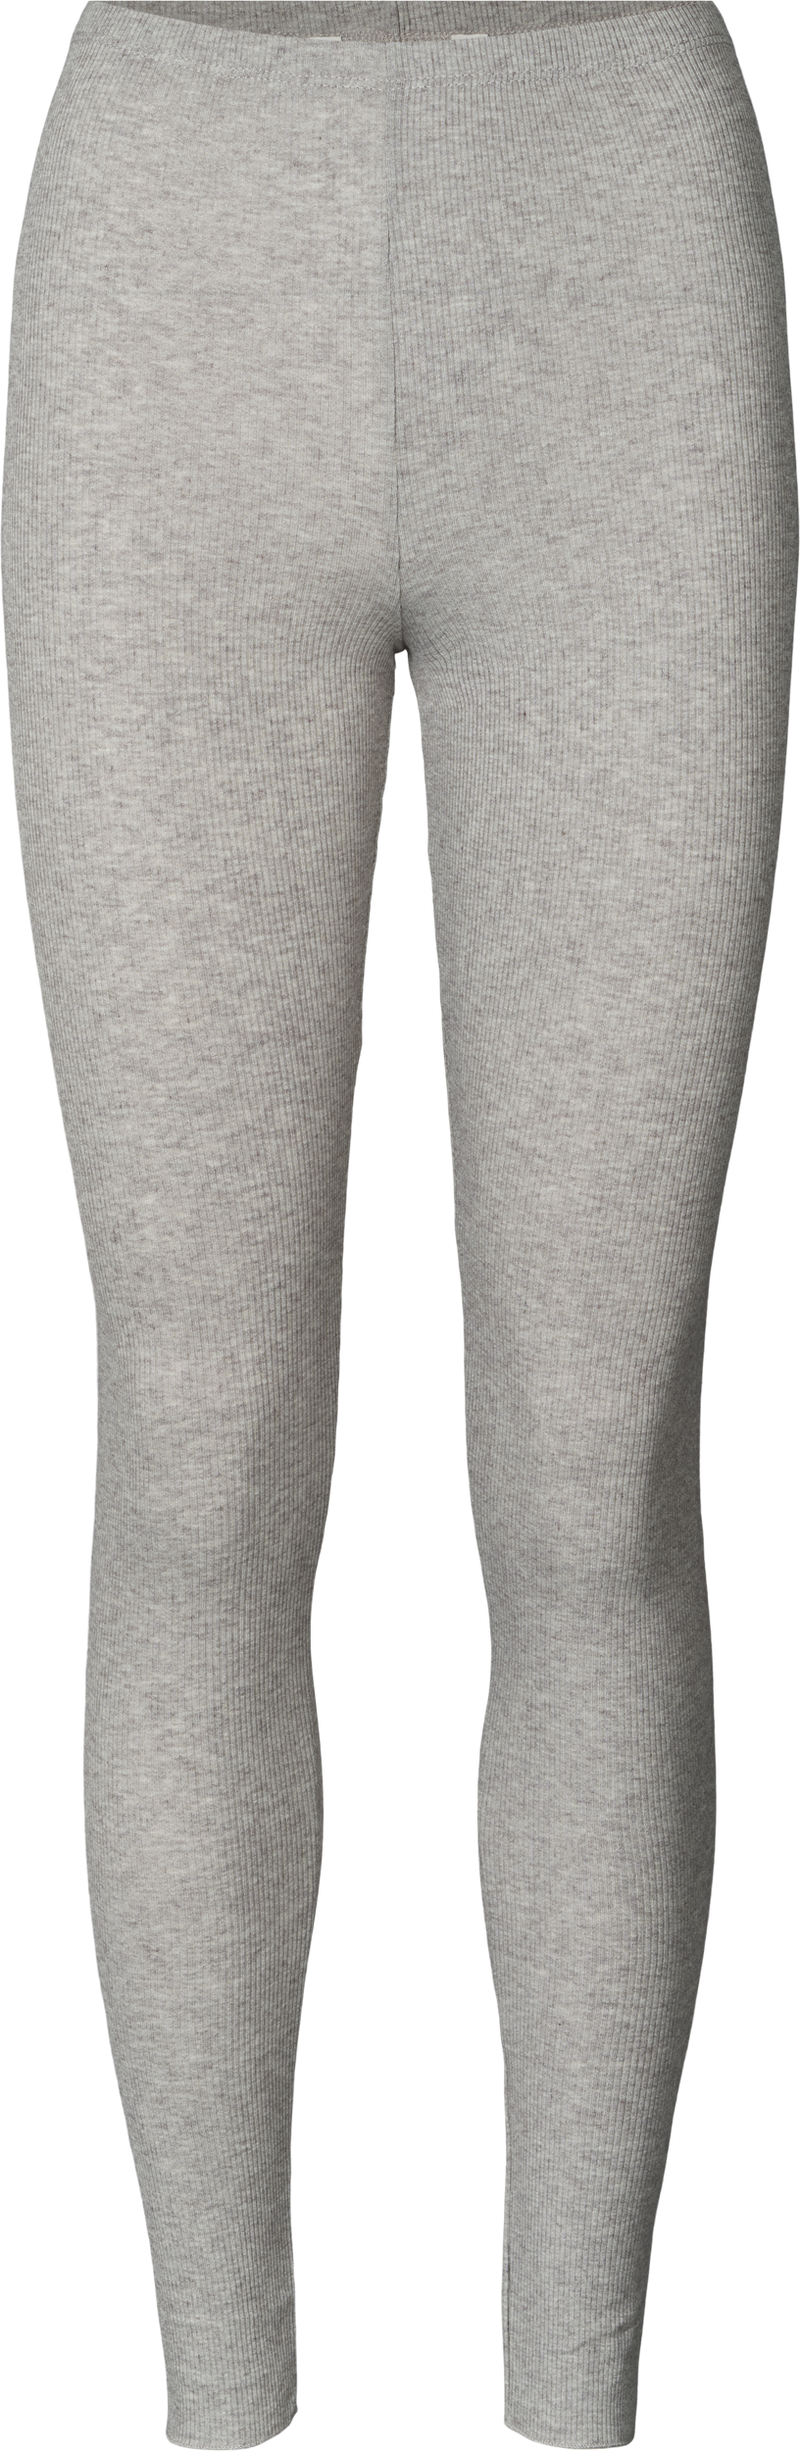 GAI+LISVA Tano Wool Legging Legging 601 Light Grey Melange